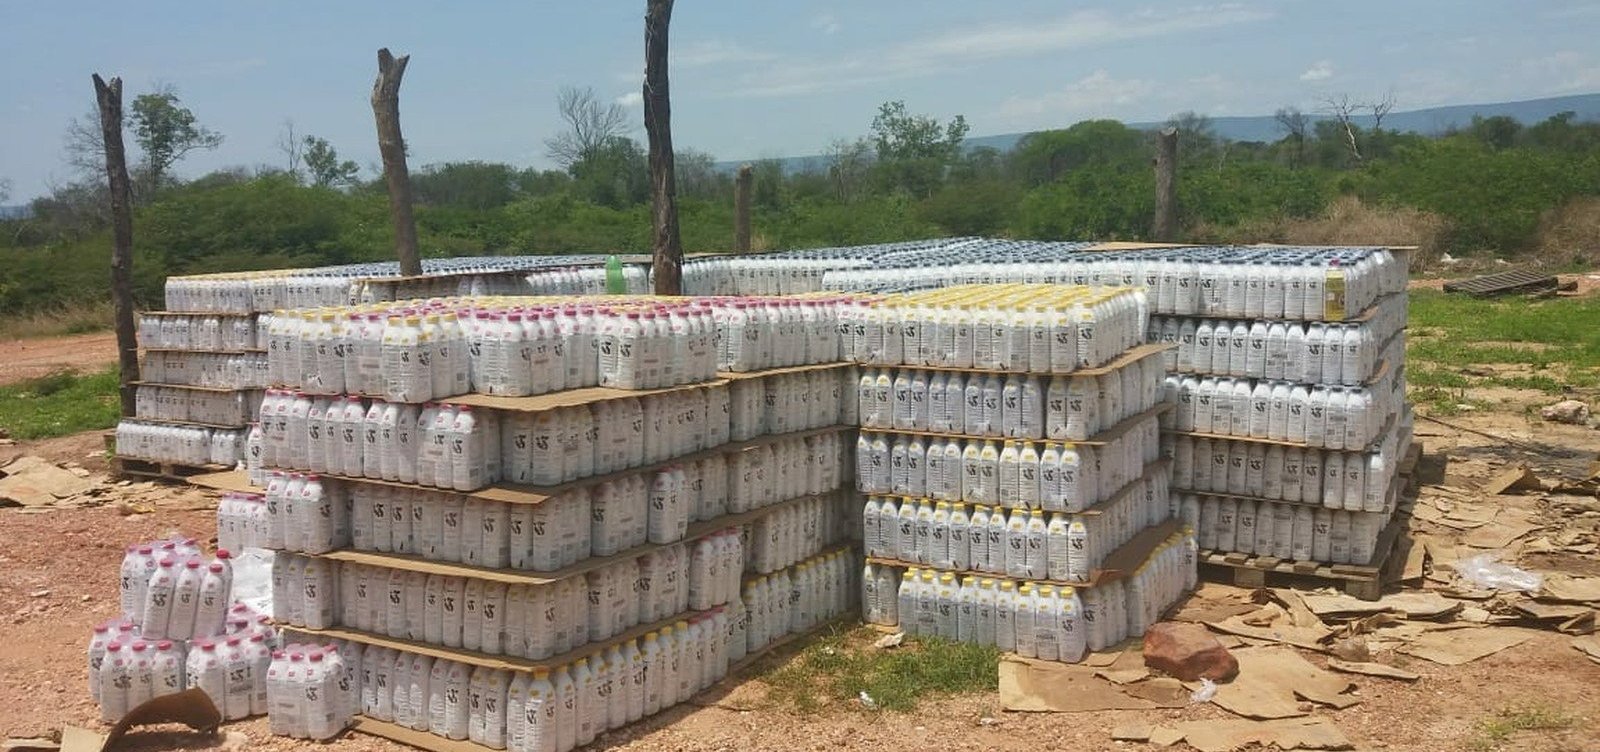 Após denúncia, carga com 25 mil litros de leite é recuperada no oeste do estado